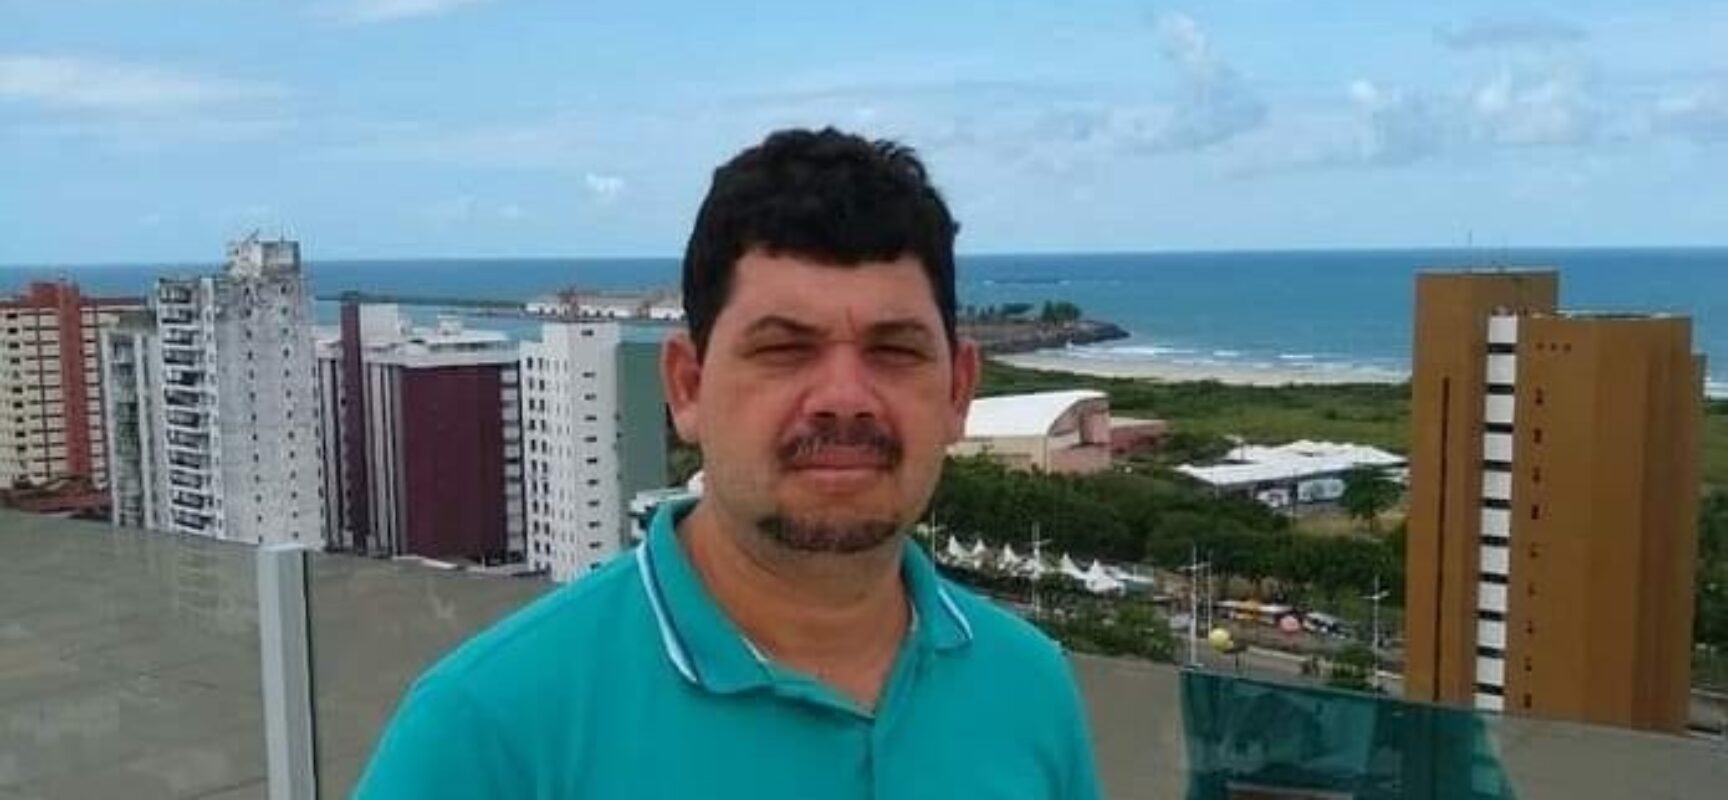 Gersinho Alves, servidor público exemplar e referência no apoio aos Conselhos, em Ilhéus.